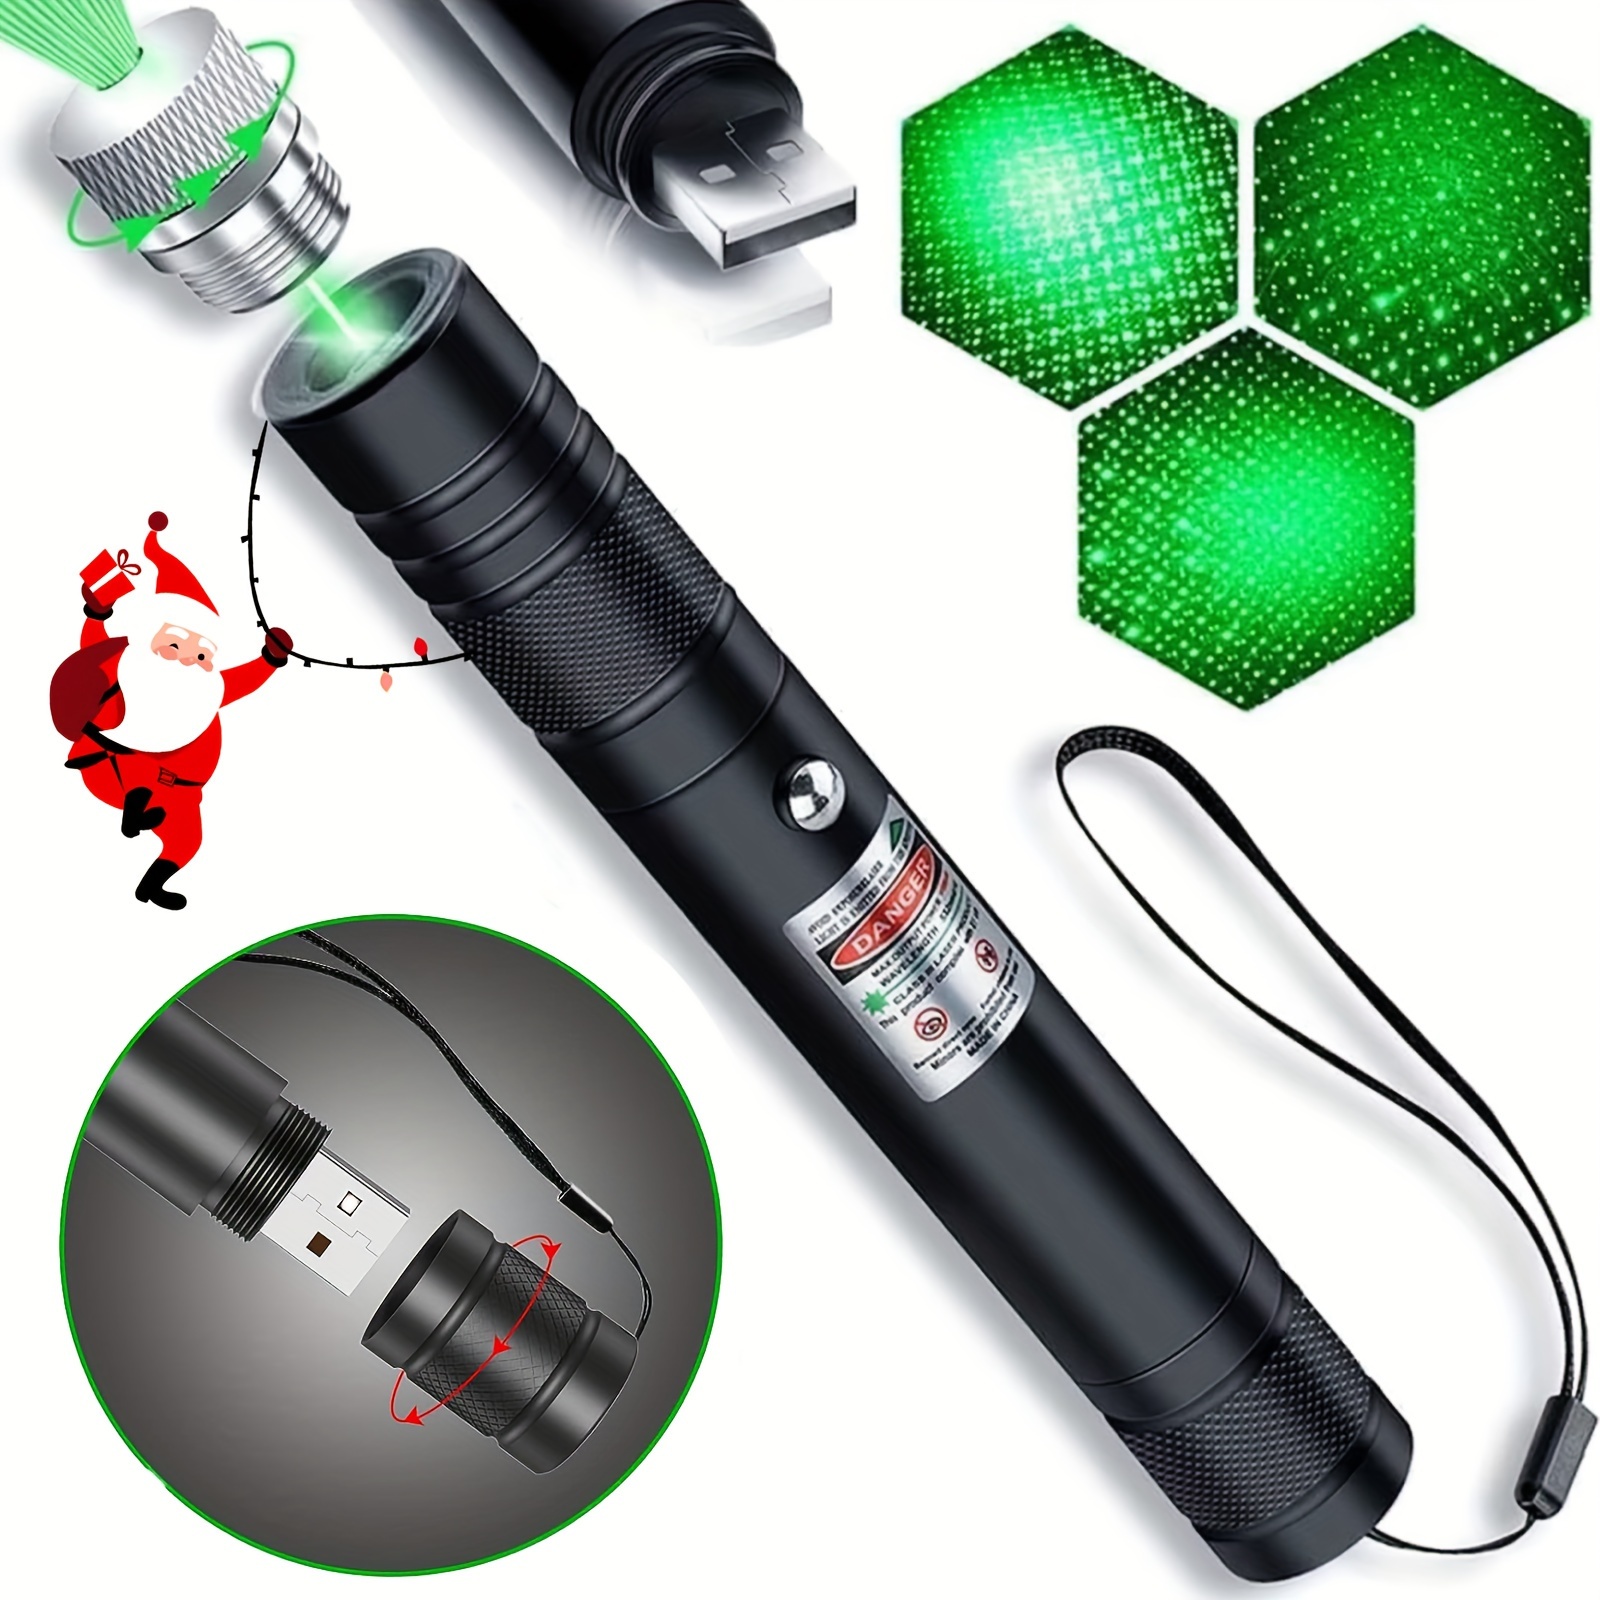 puntero laser astronomia – Compra puntero laser astronomia con envío gratis  en AliExpress version